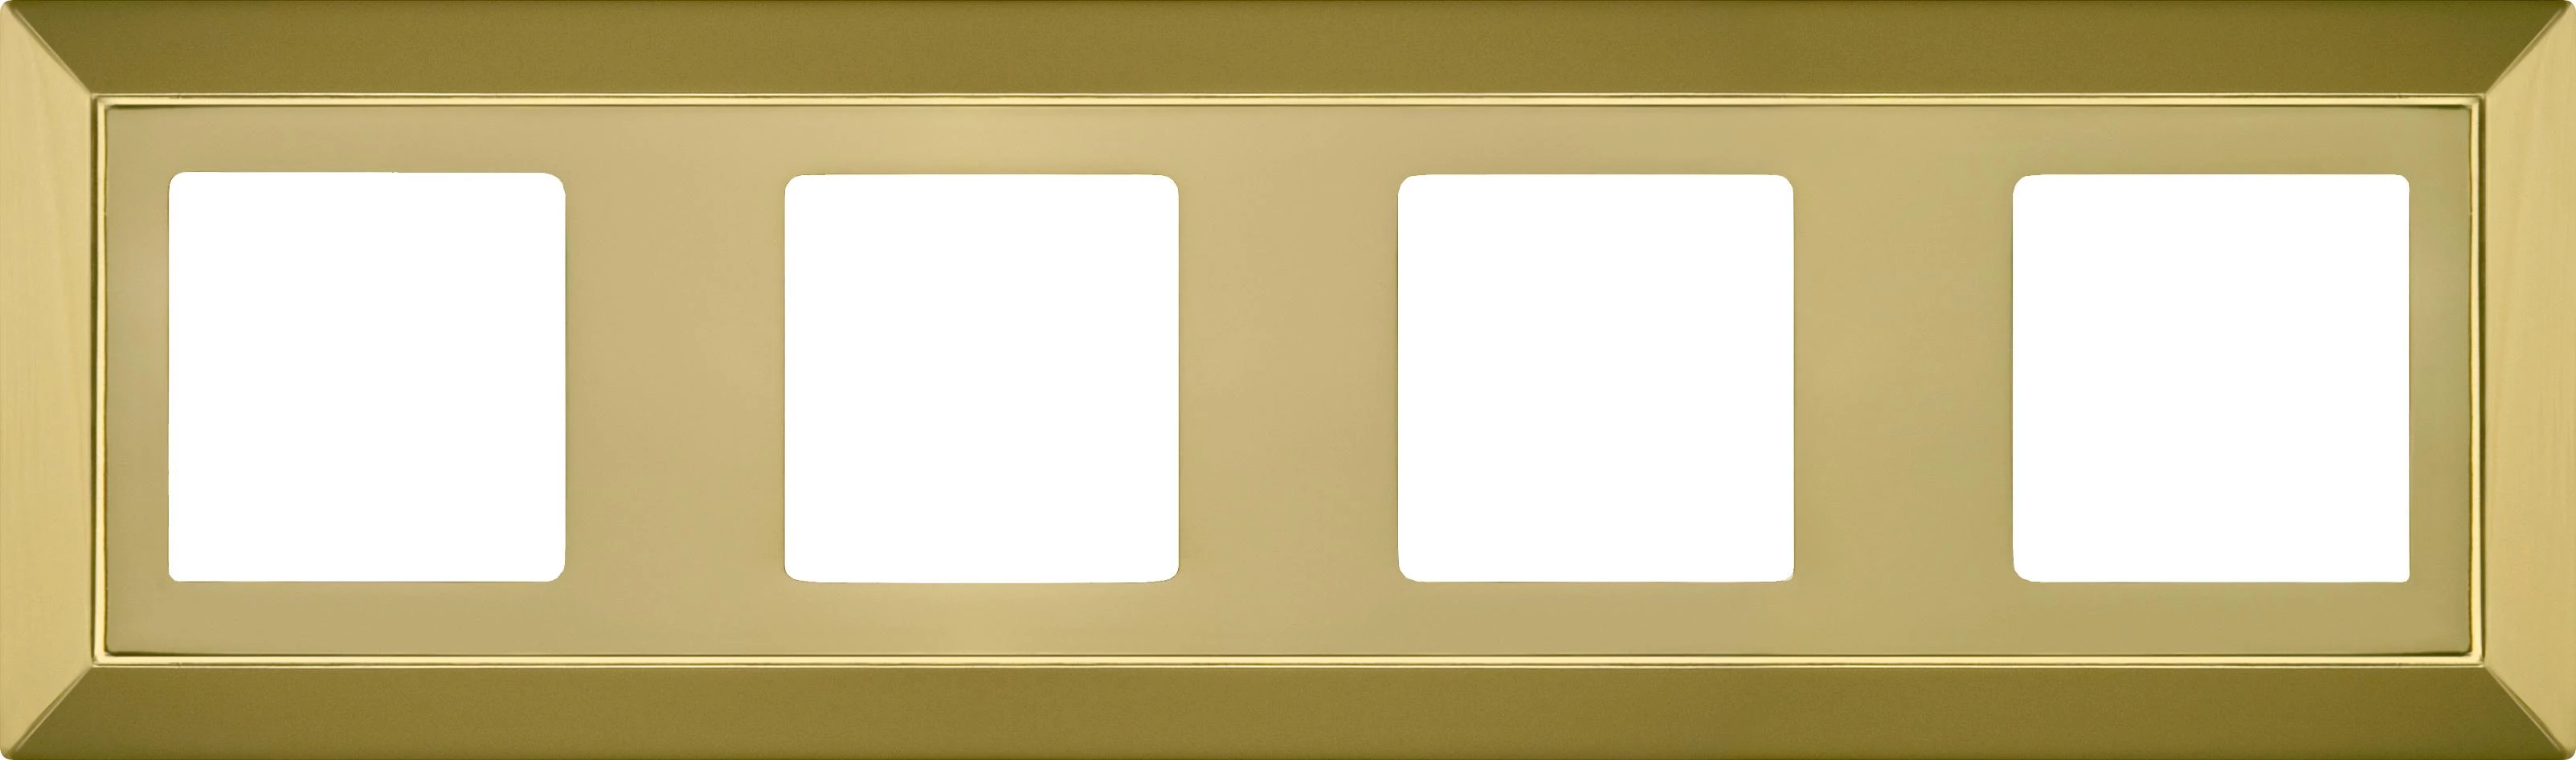  артикул FD01254OB название Рамка 4-ая (четверная), цвет Светлое золото, Barcelona, Fede